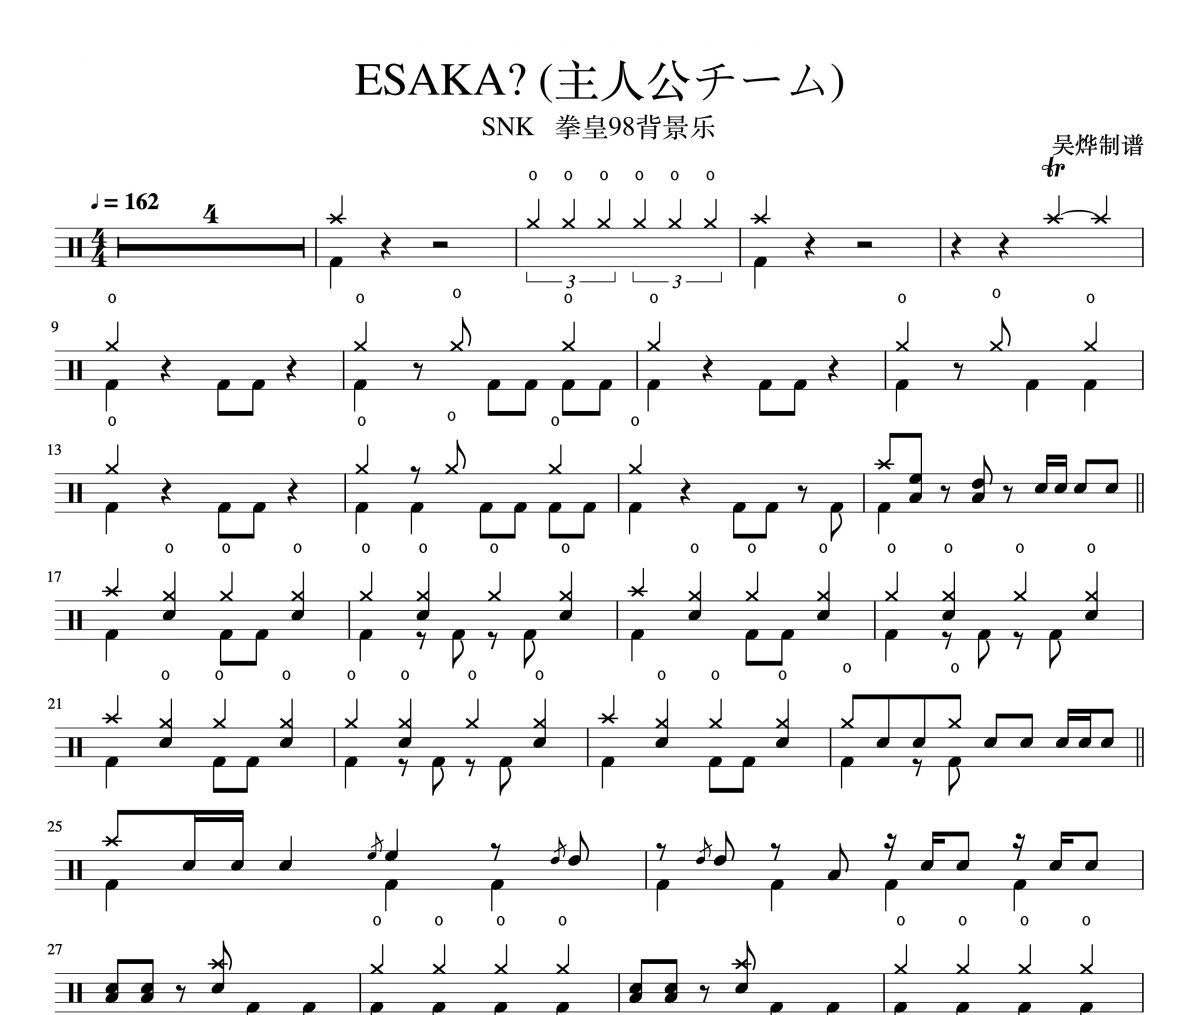 SNK-拳皇98背景乐-ESAKA? (主人公チーム) 架子鼓谱